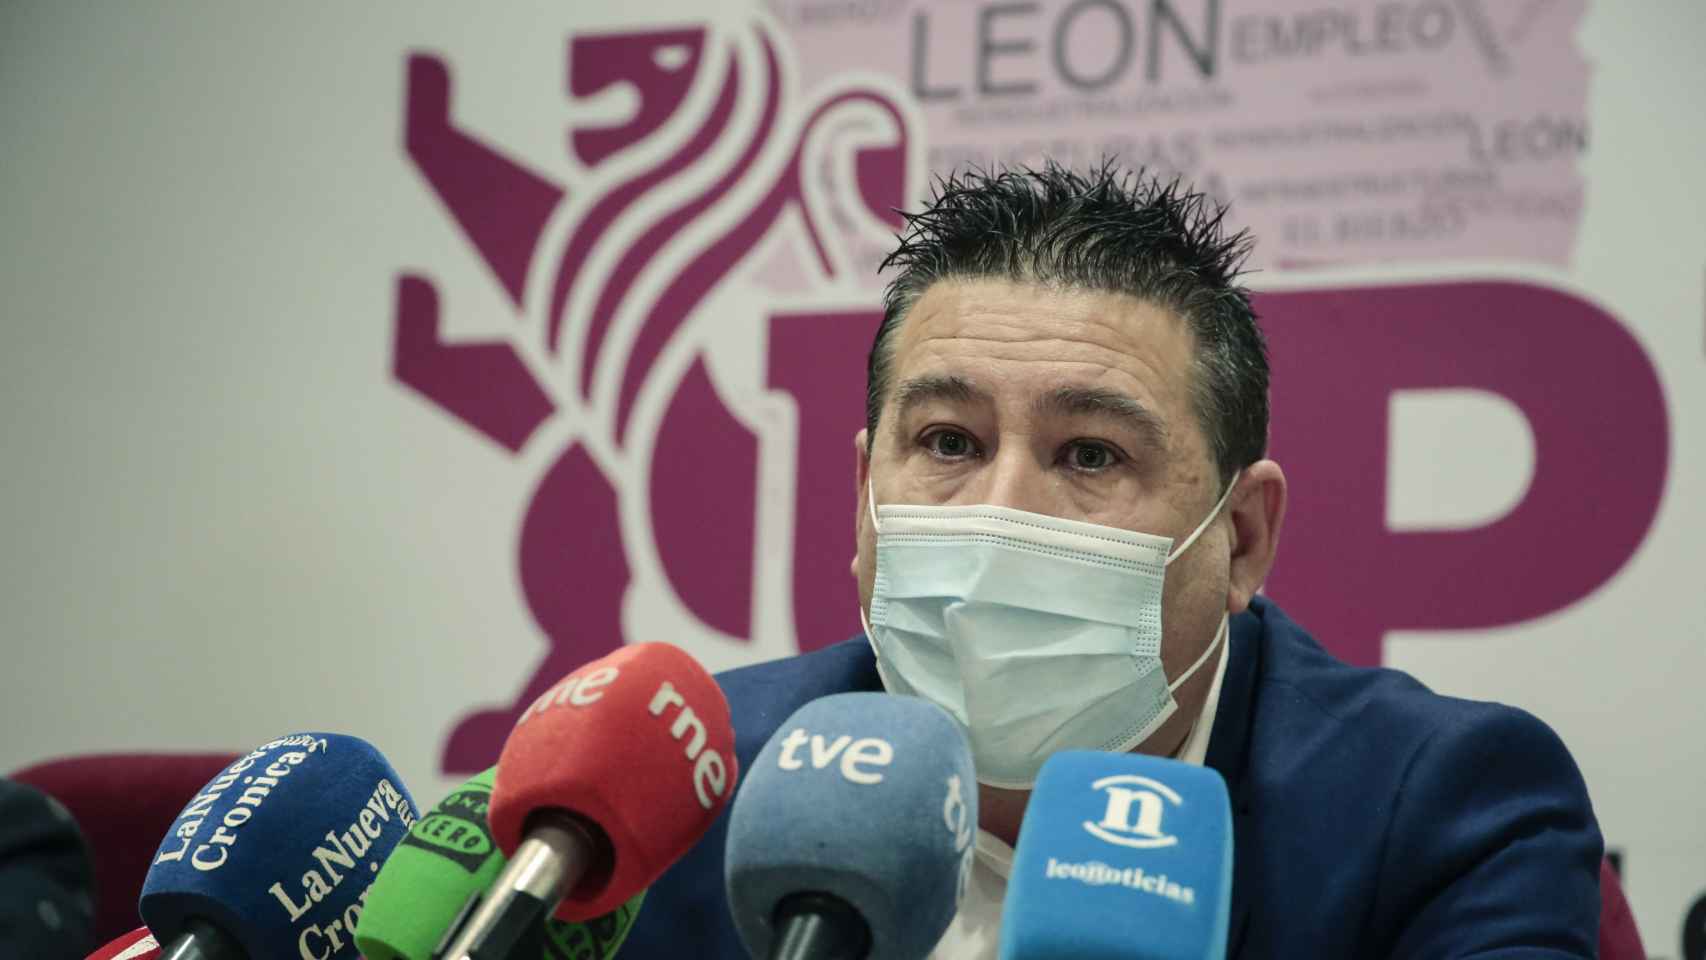 El candidato a las Cortes de Castilla y León, Luis Mariano Santos